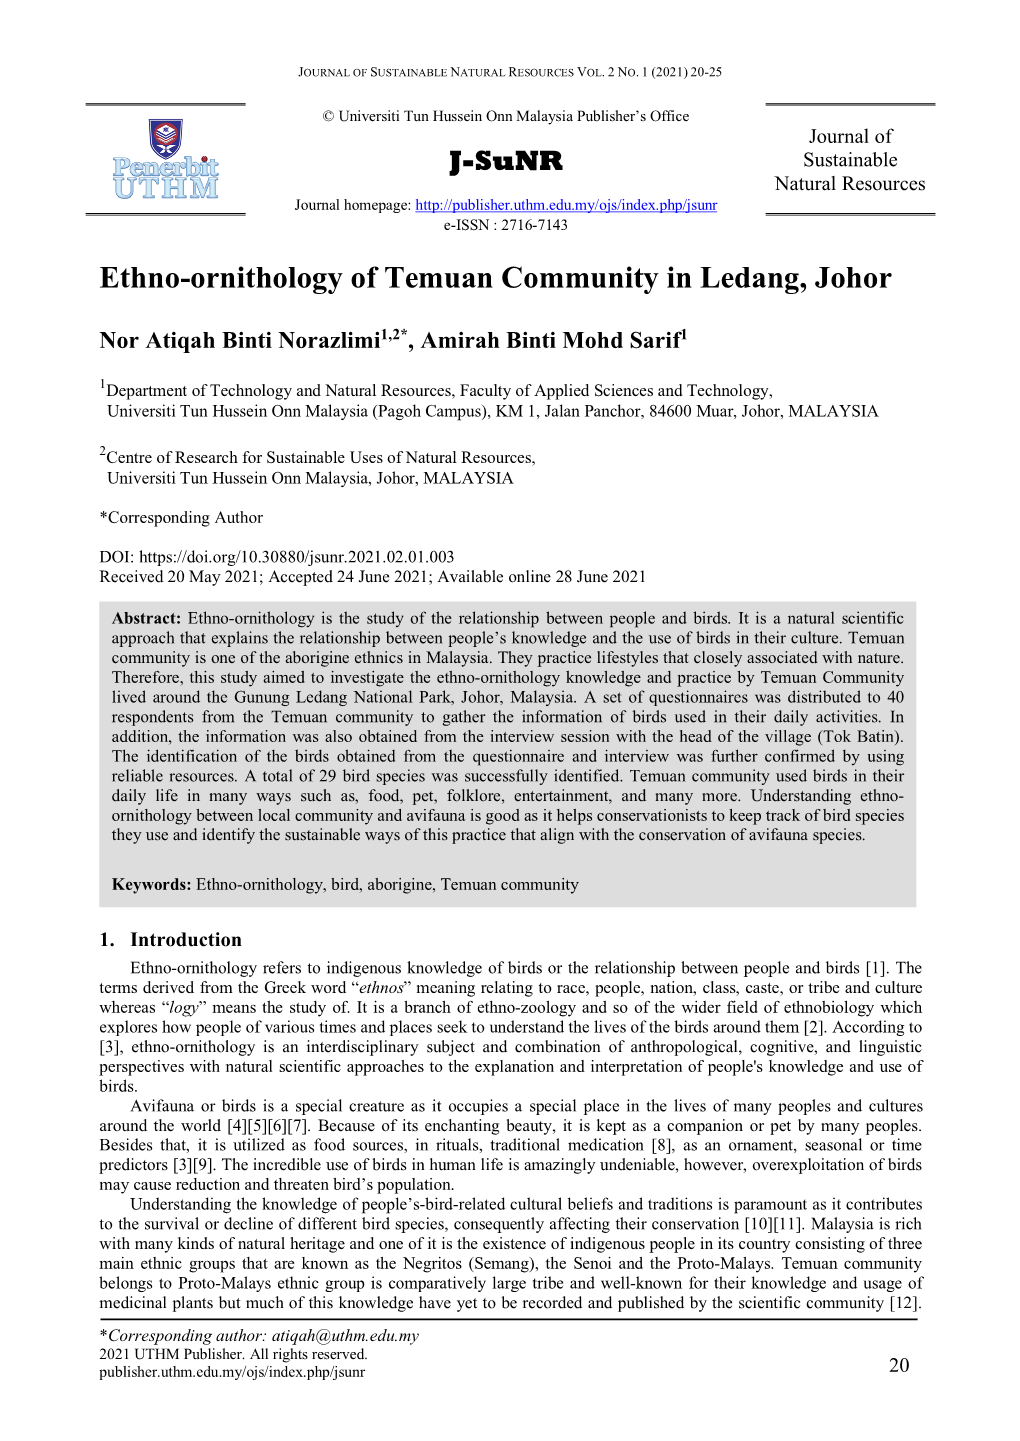 Ethno-Ornithology of Temuan Community in Ledang, Johor